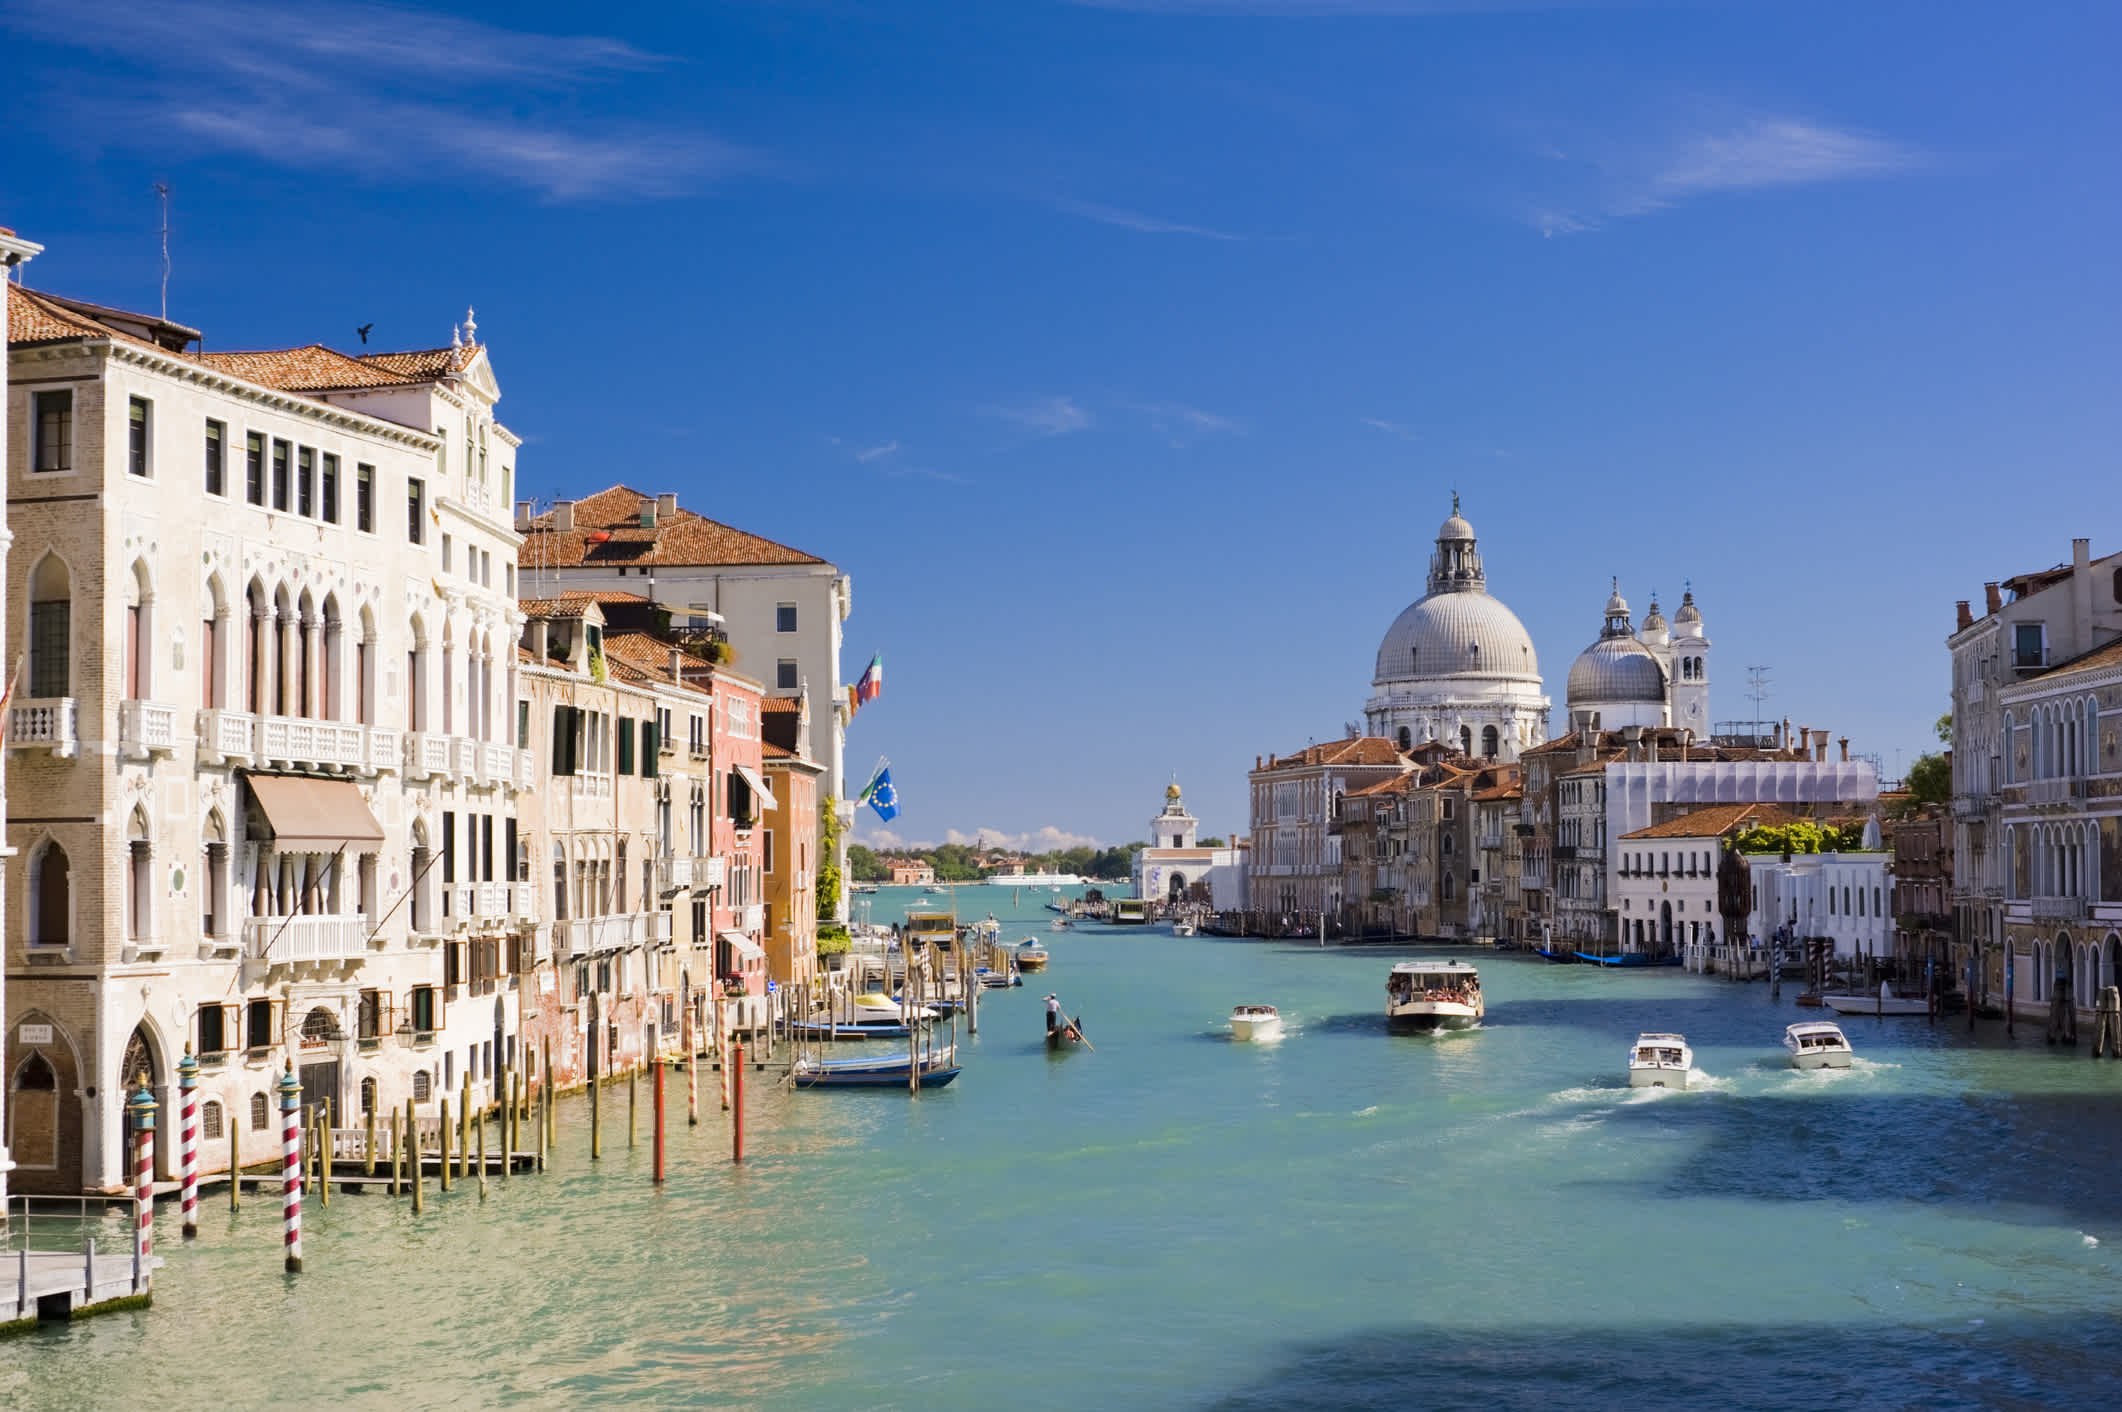 Le Grand Canal et l'église Santa Maria della Salute, Venise, Italie.